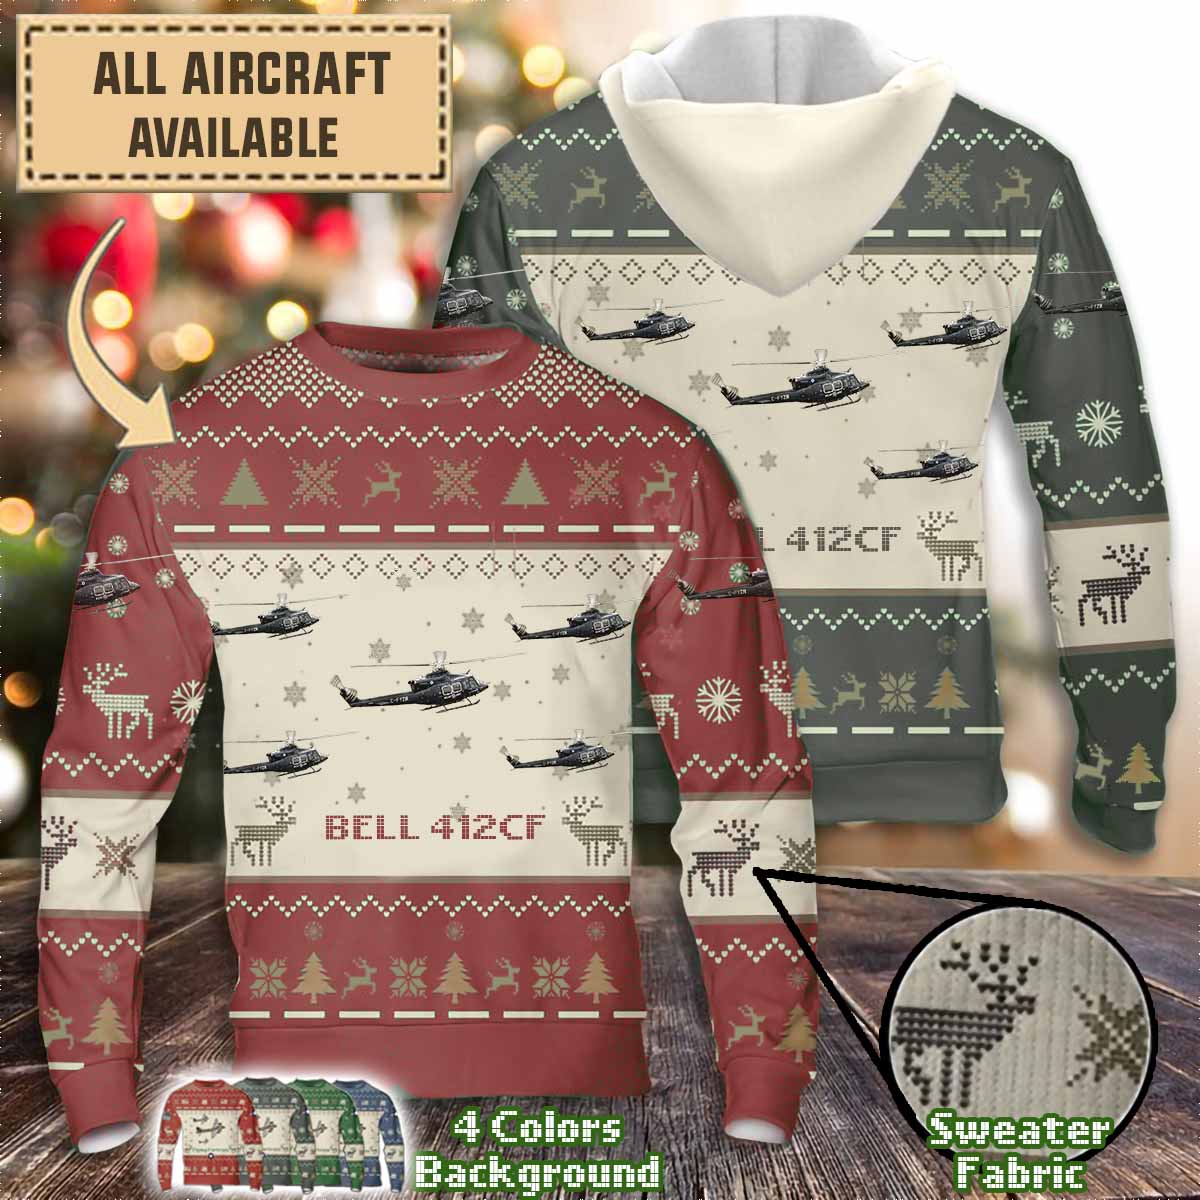 bell 412cfaircraft sweater brtv7